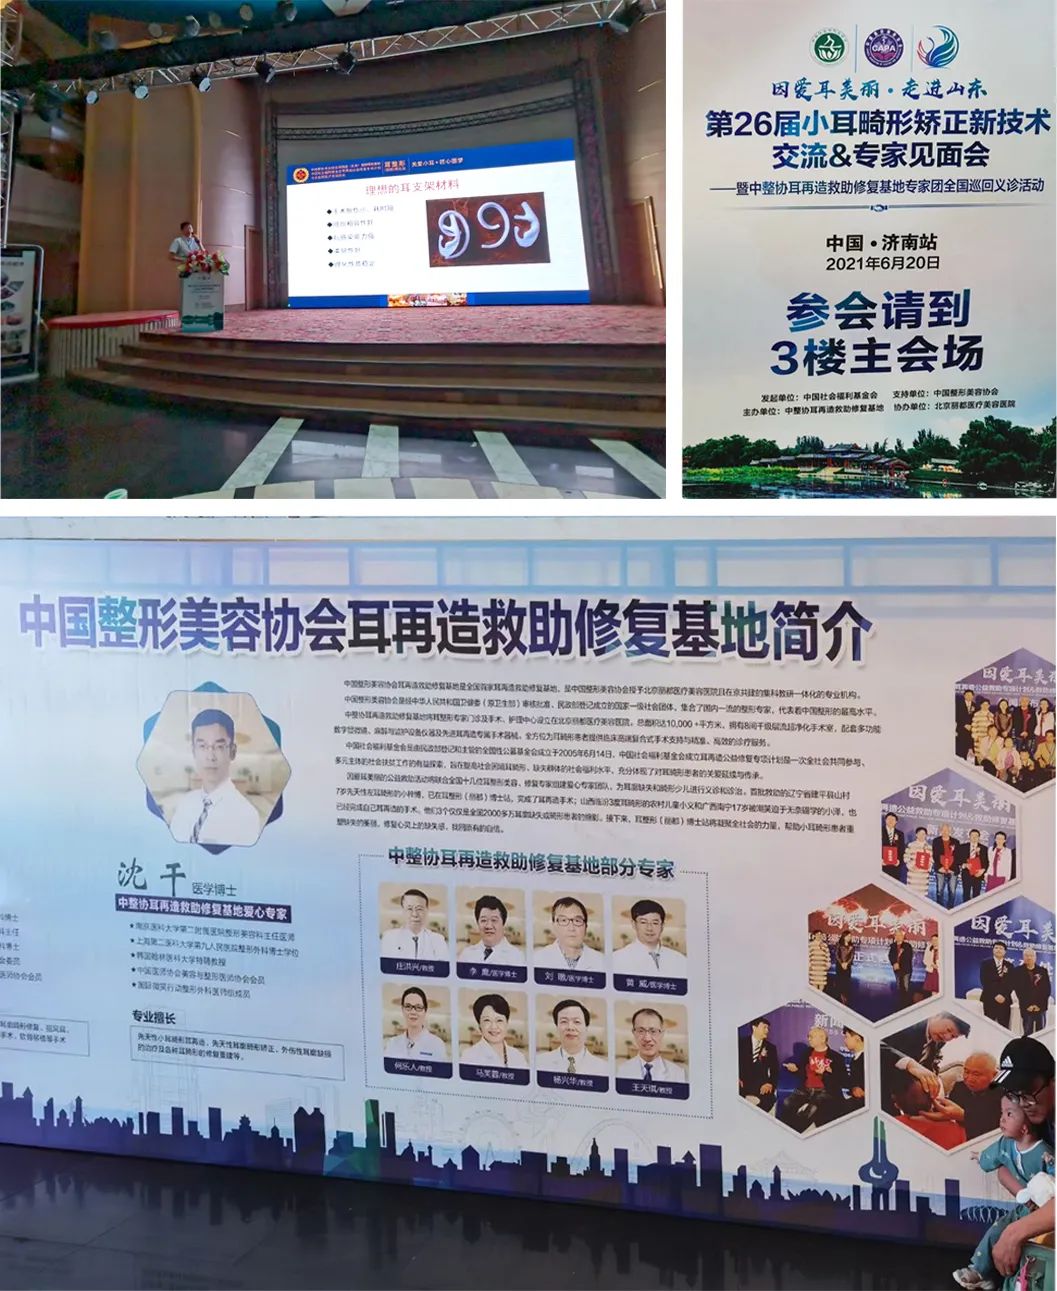 重庆北部宽仁医院医疗美容科沈干出席全国小耳畸形矫正新技术大会